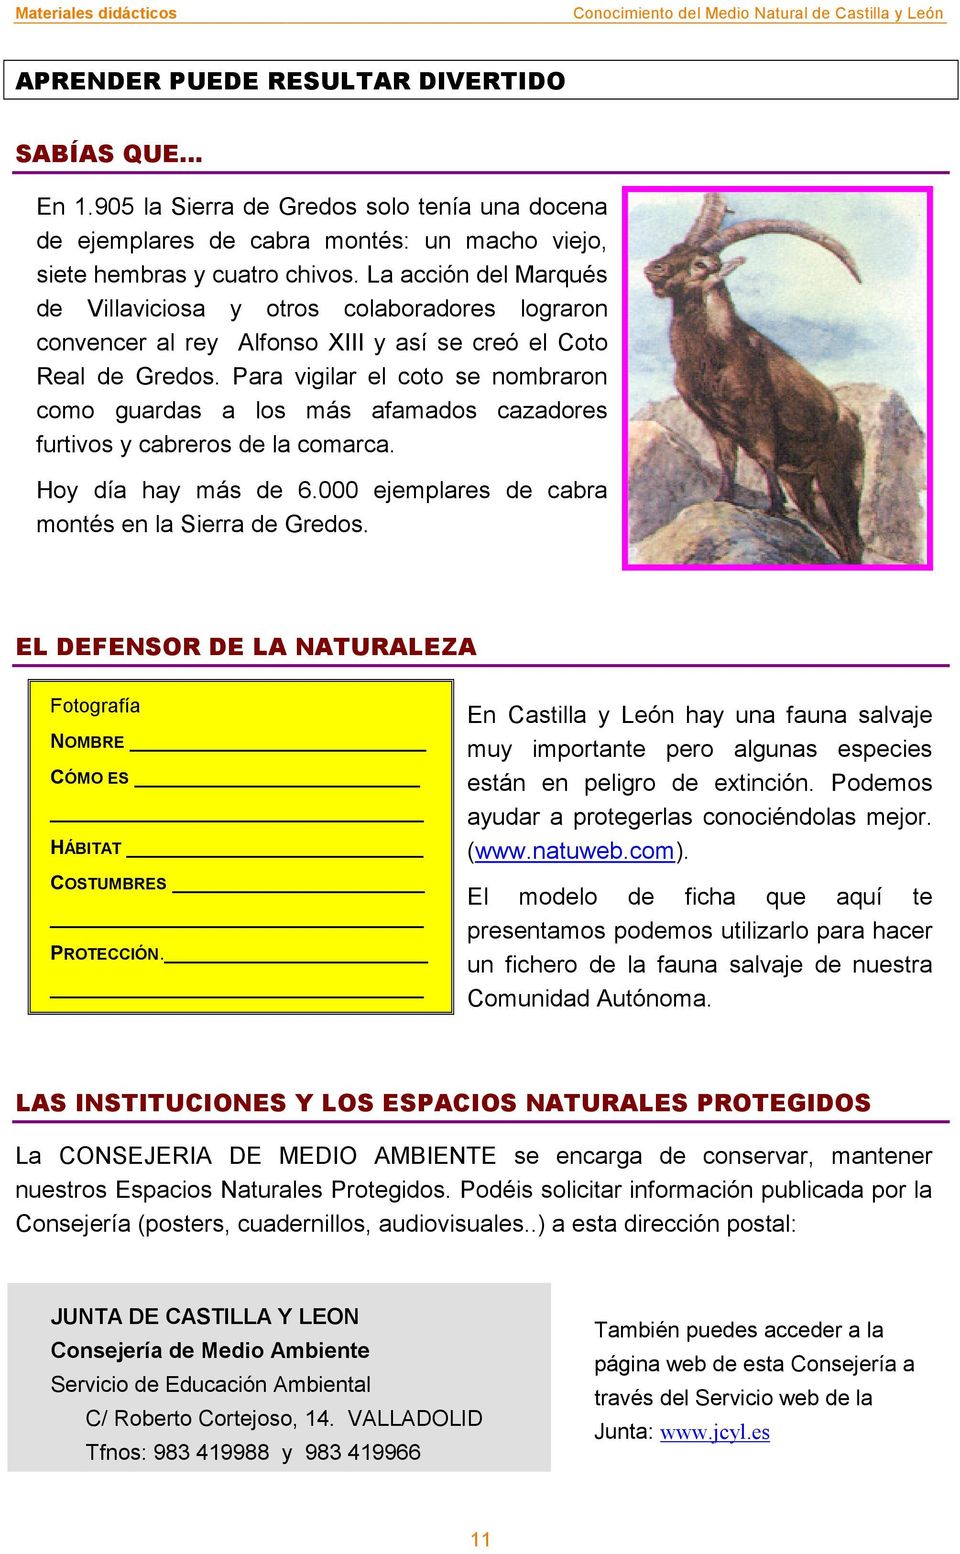 Para vigilar el coto se nombraron como guardas a los más afamados cazadores furtivos y cabreros de la comarca. Hoy día hay más de 6.000 ejemplares de cabra montés en la Sierra de Gredos.